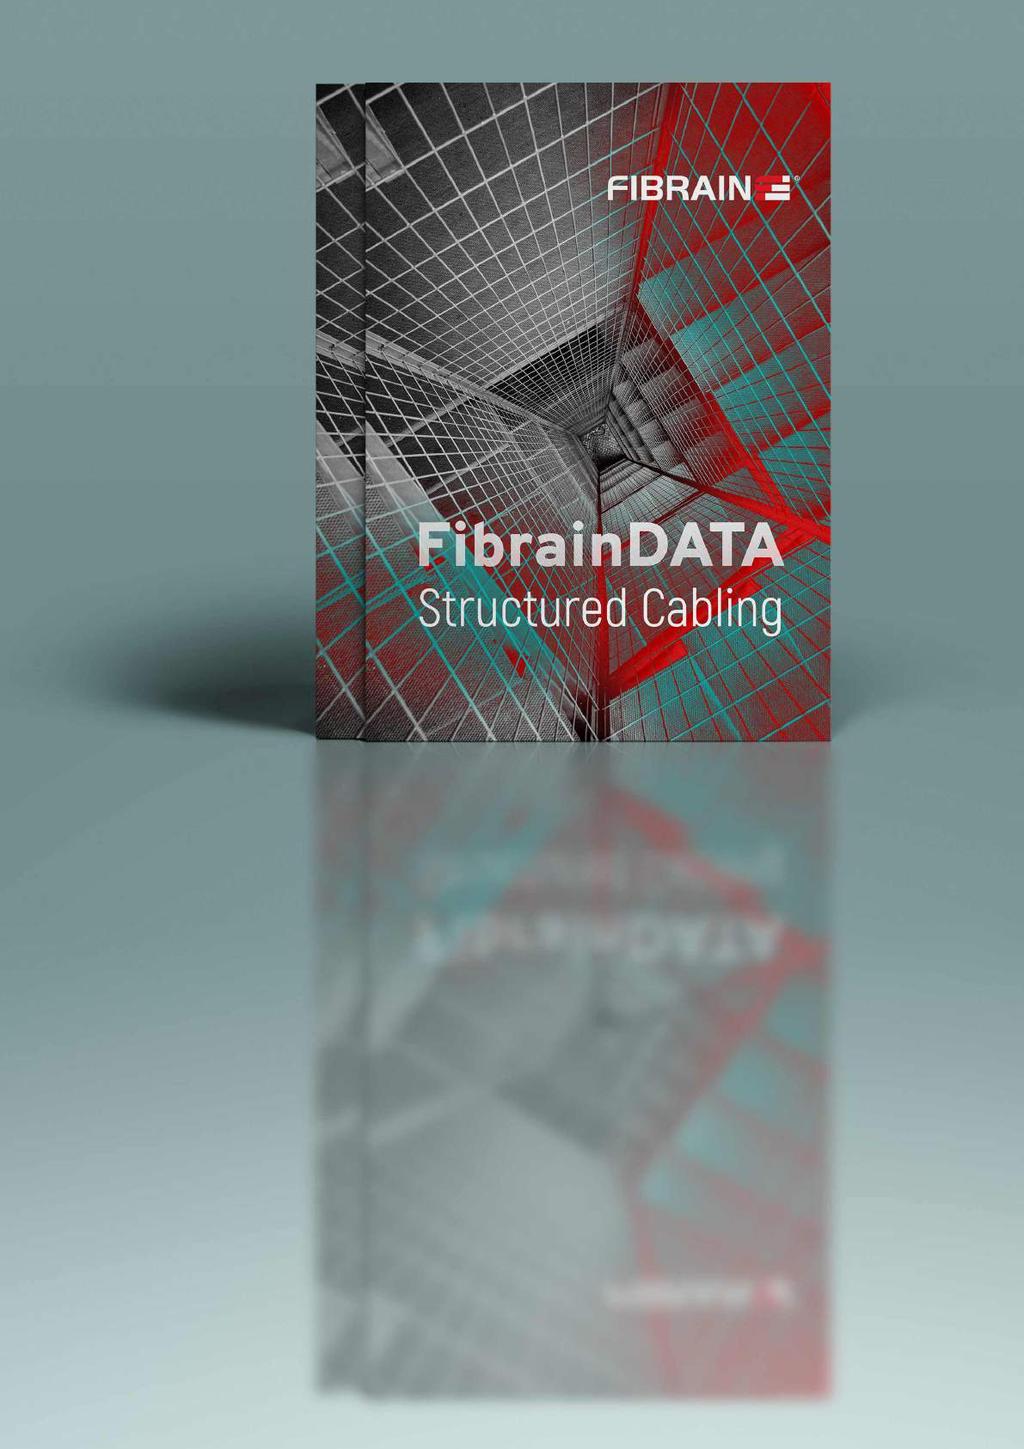 AKTUALNOŚCI Nowy katalog FibrainDATA w specjalnej, powiększonej wersji o rozwiązania światłowodowe Już jest! Nasz najnowszy katalog okablowania strukturalnego FibrainDATA 2017/18.